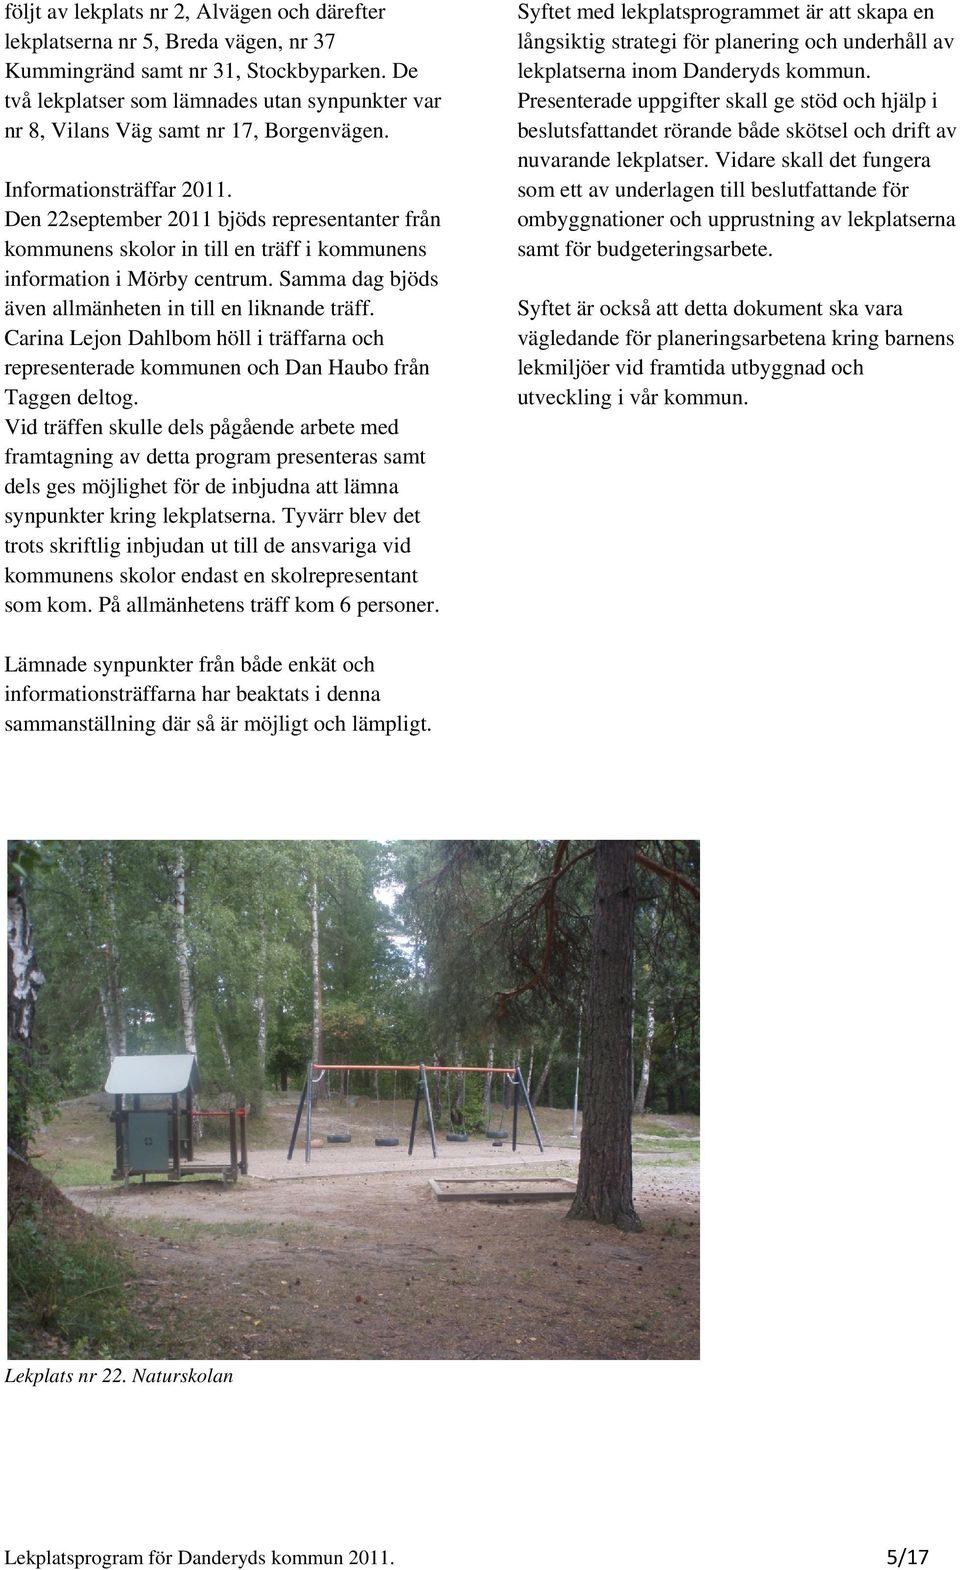 Den 22september 2011 bjöds representanter från kommunens skolor in till en träff i kommunens information i Mörby centrum. Samma dag bjöds även allmänheten in till en liknande träff.